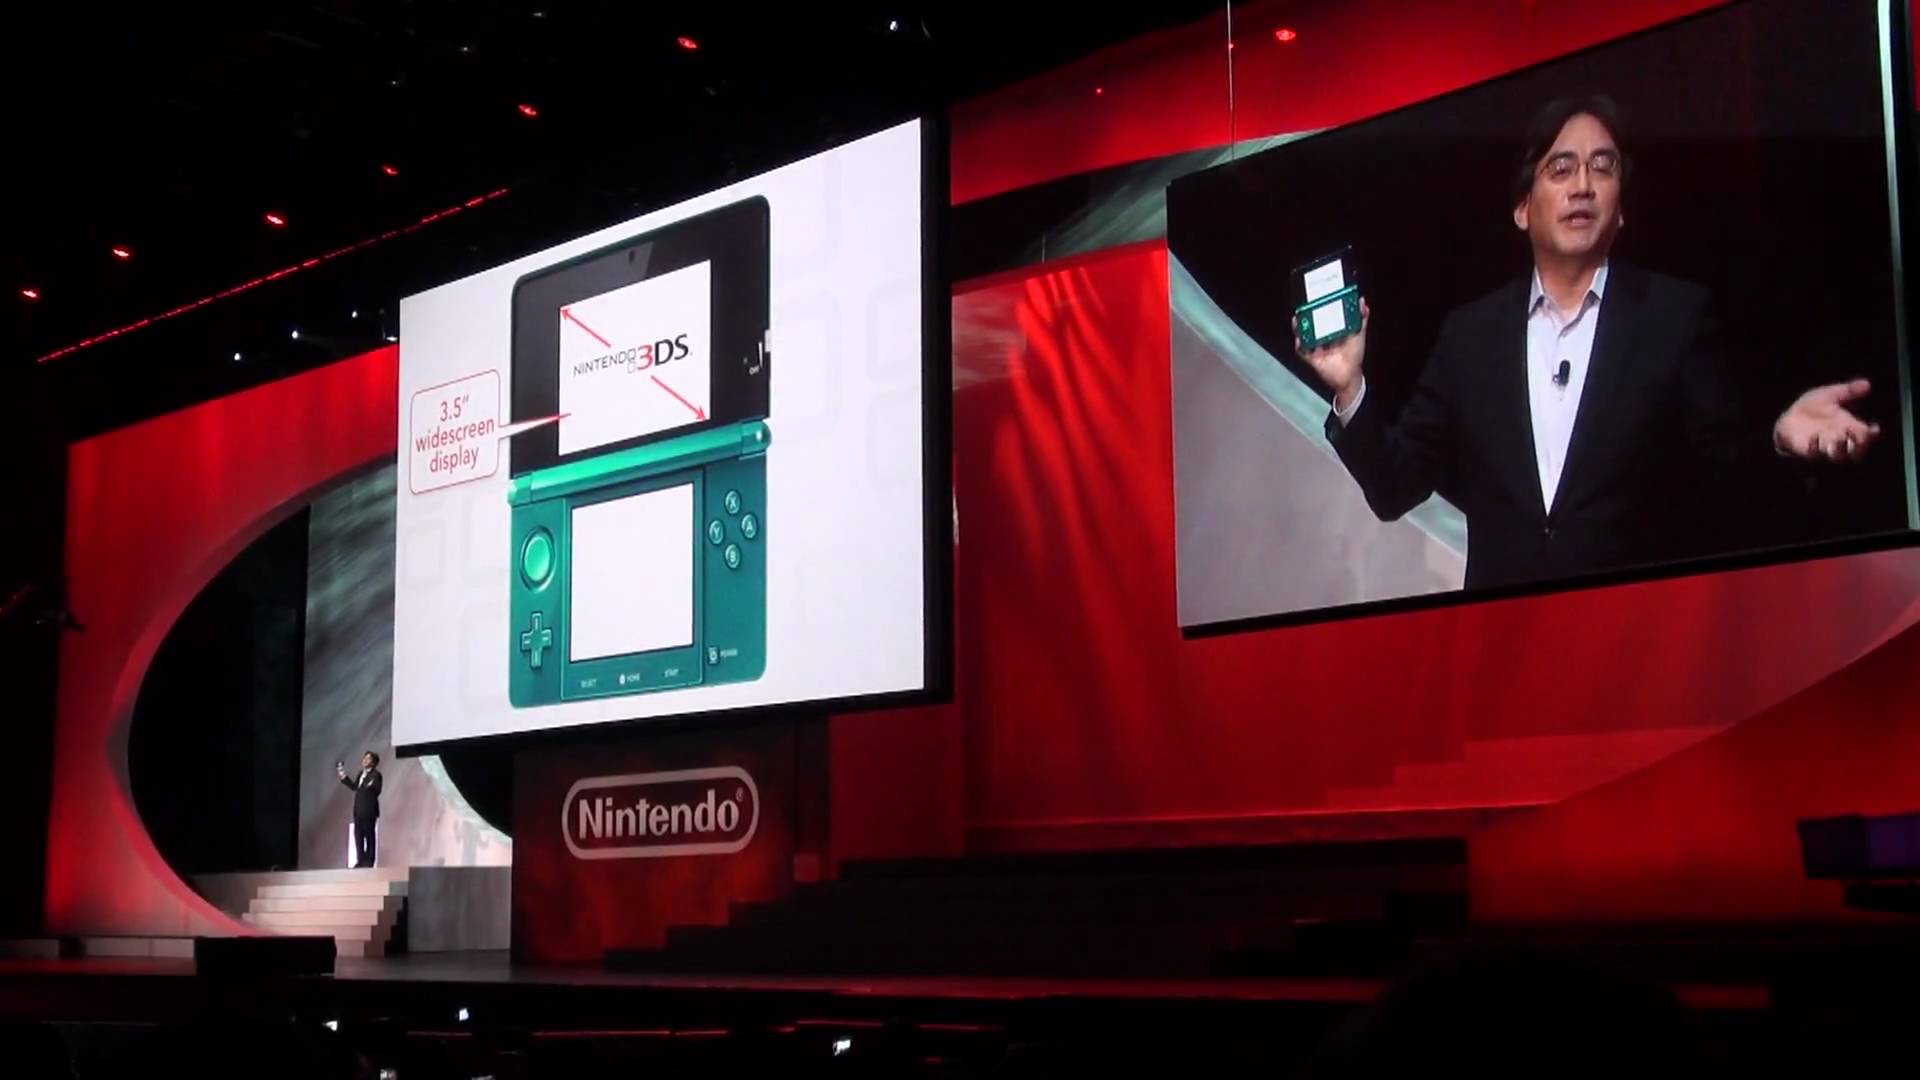 Presentazione Nintendo 3DS